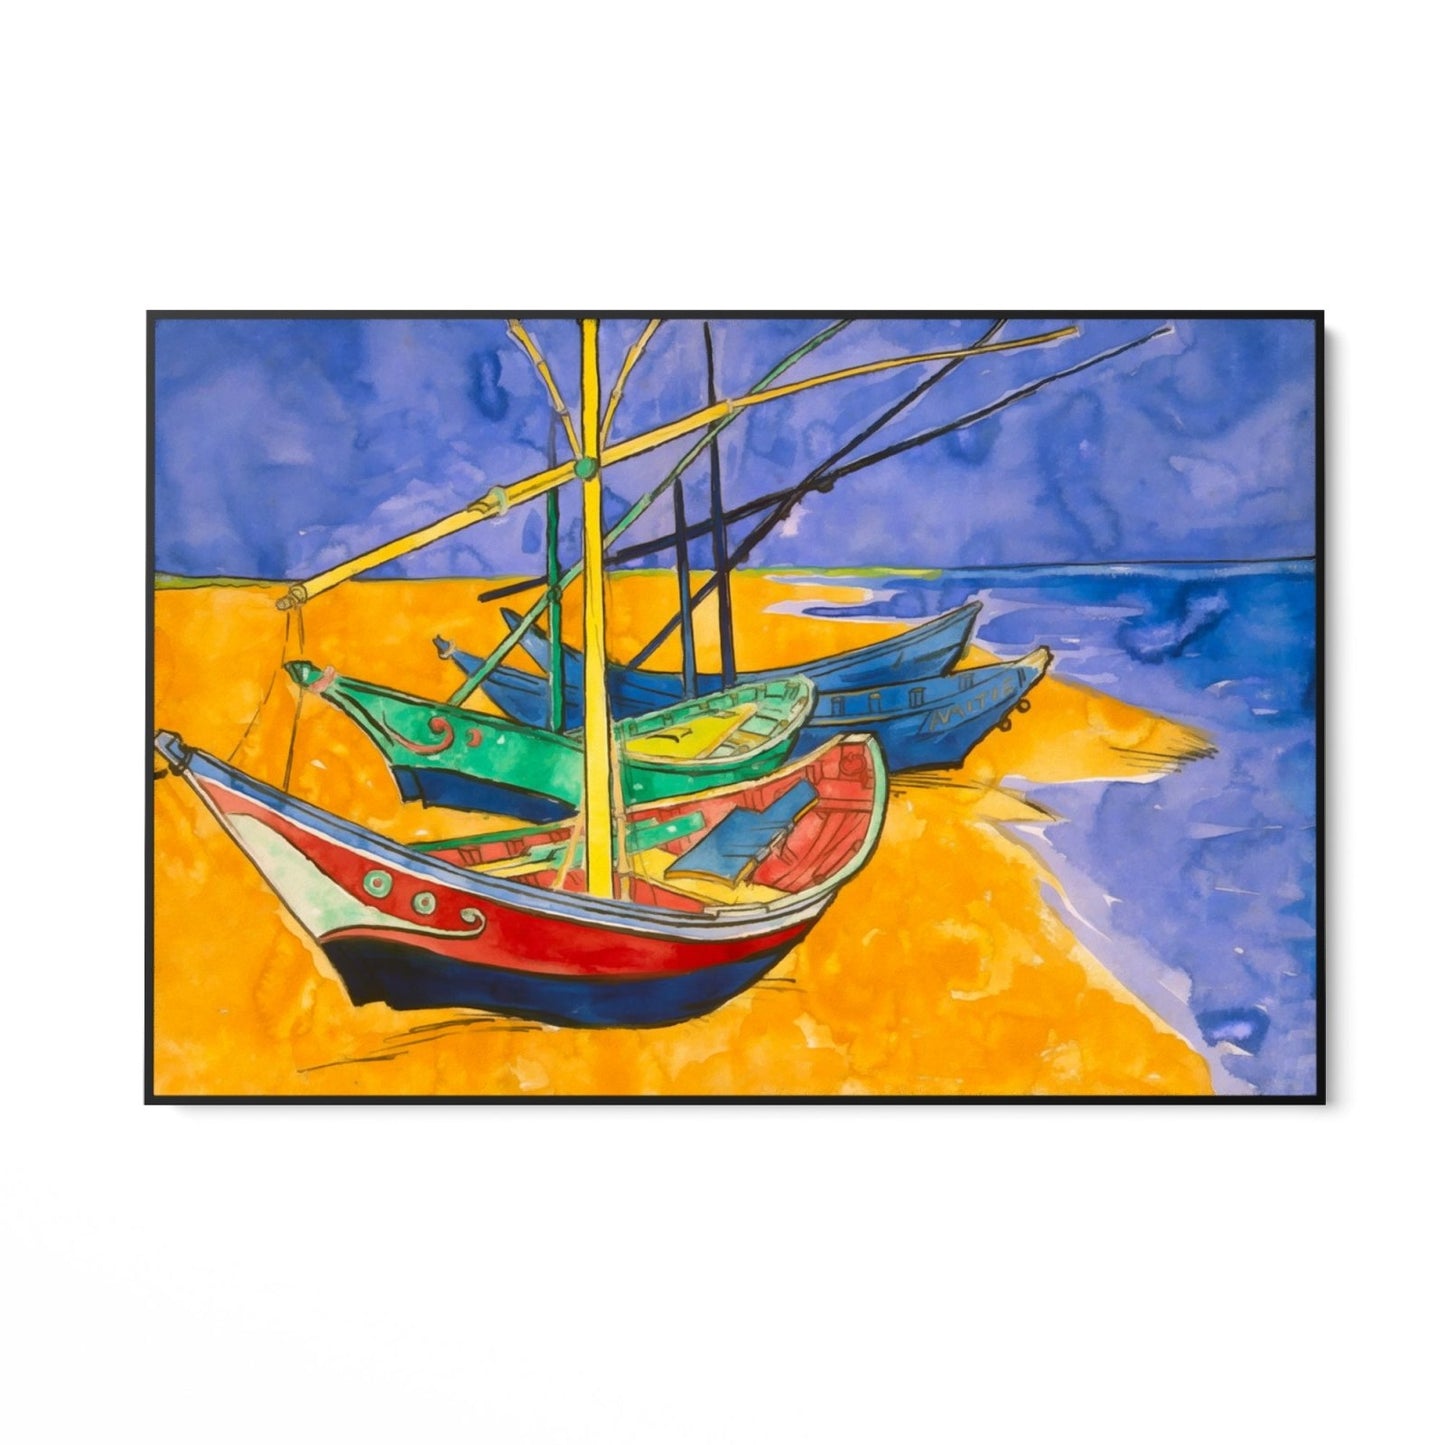 Ribarski brodovi na plaži I, Vincent Van Gogh